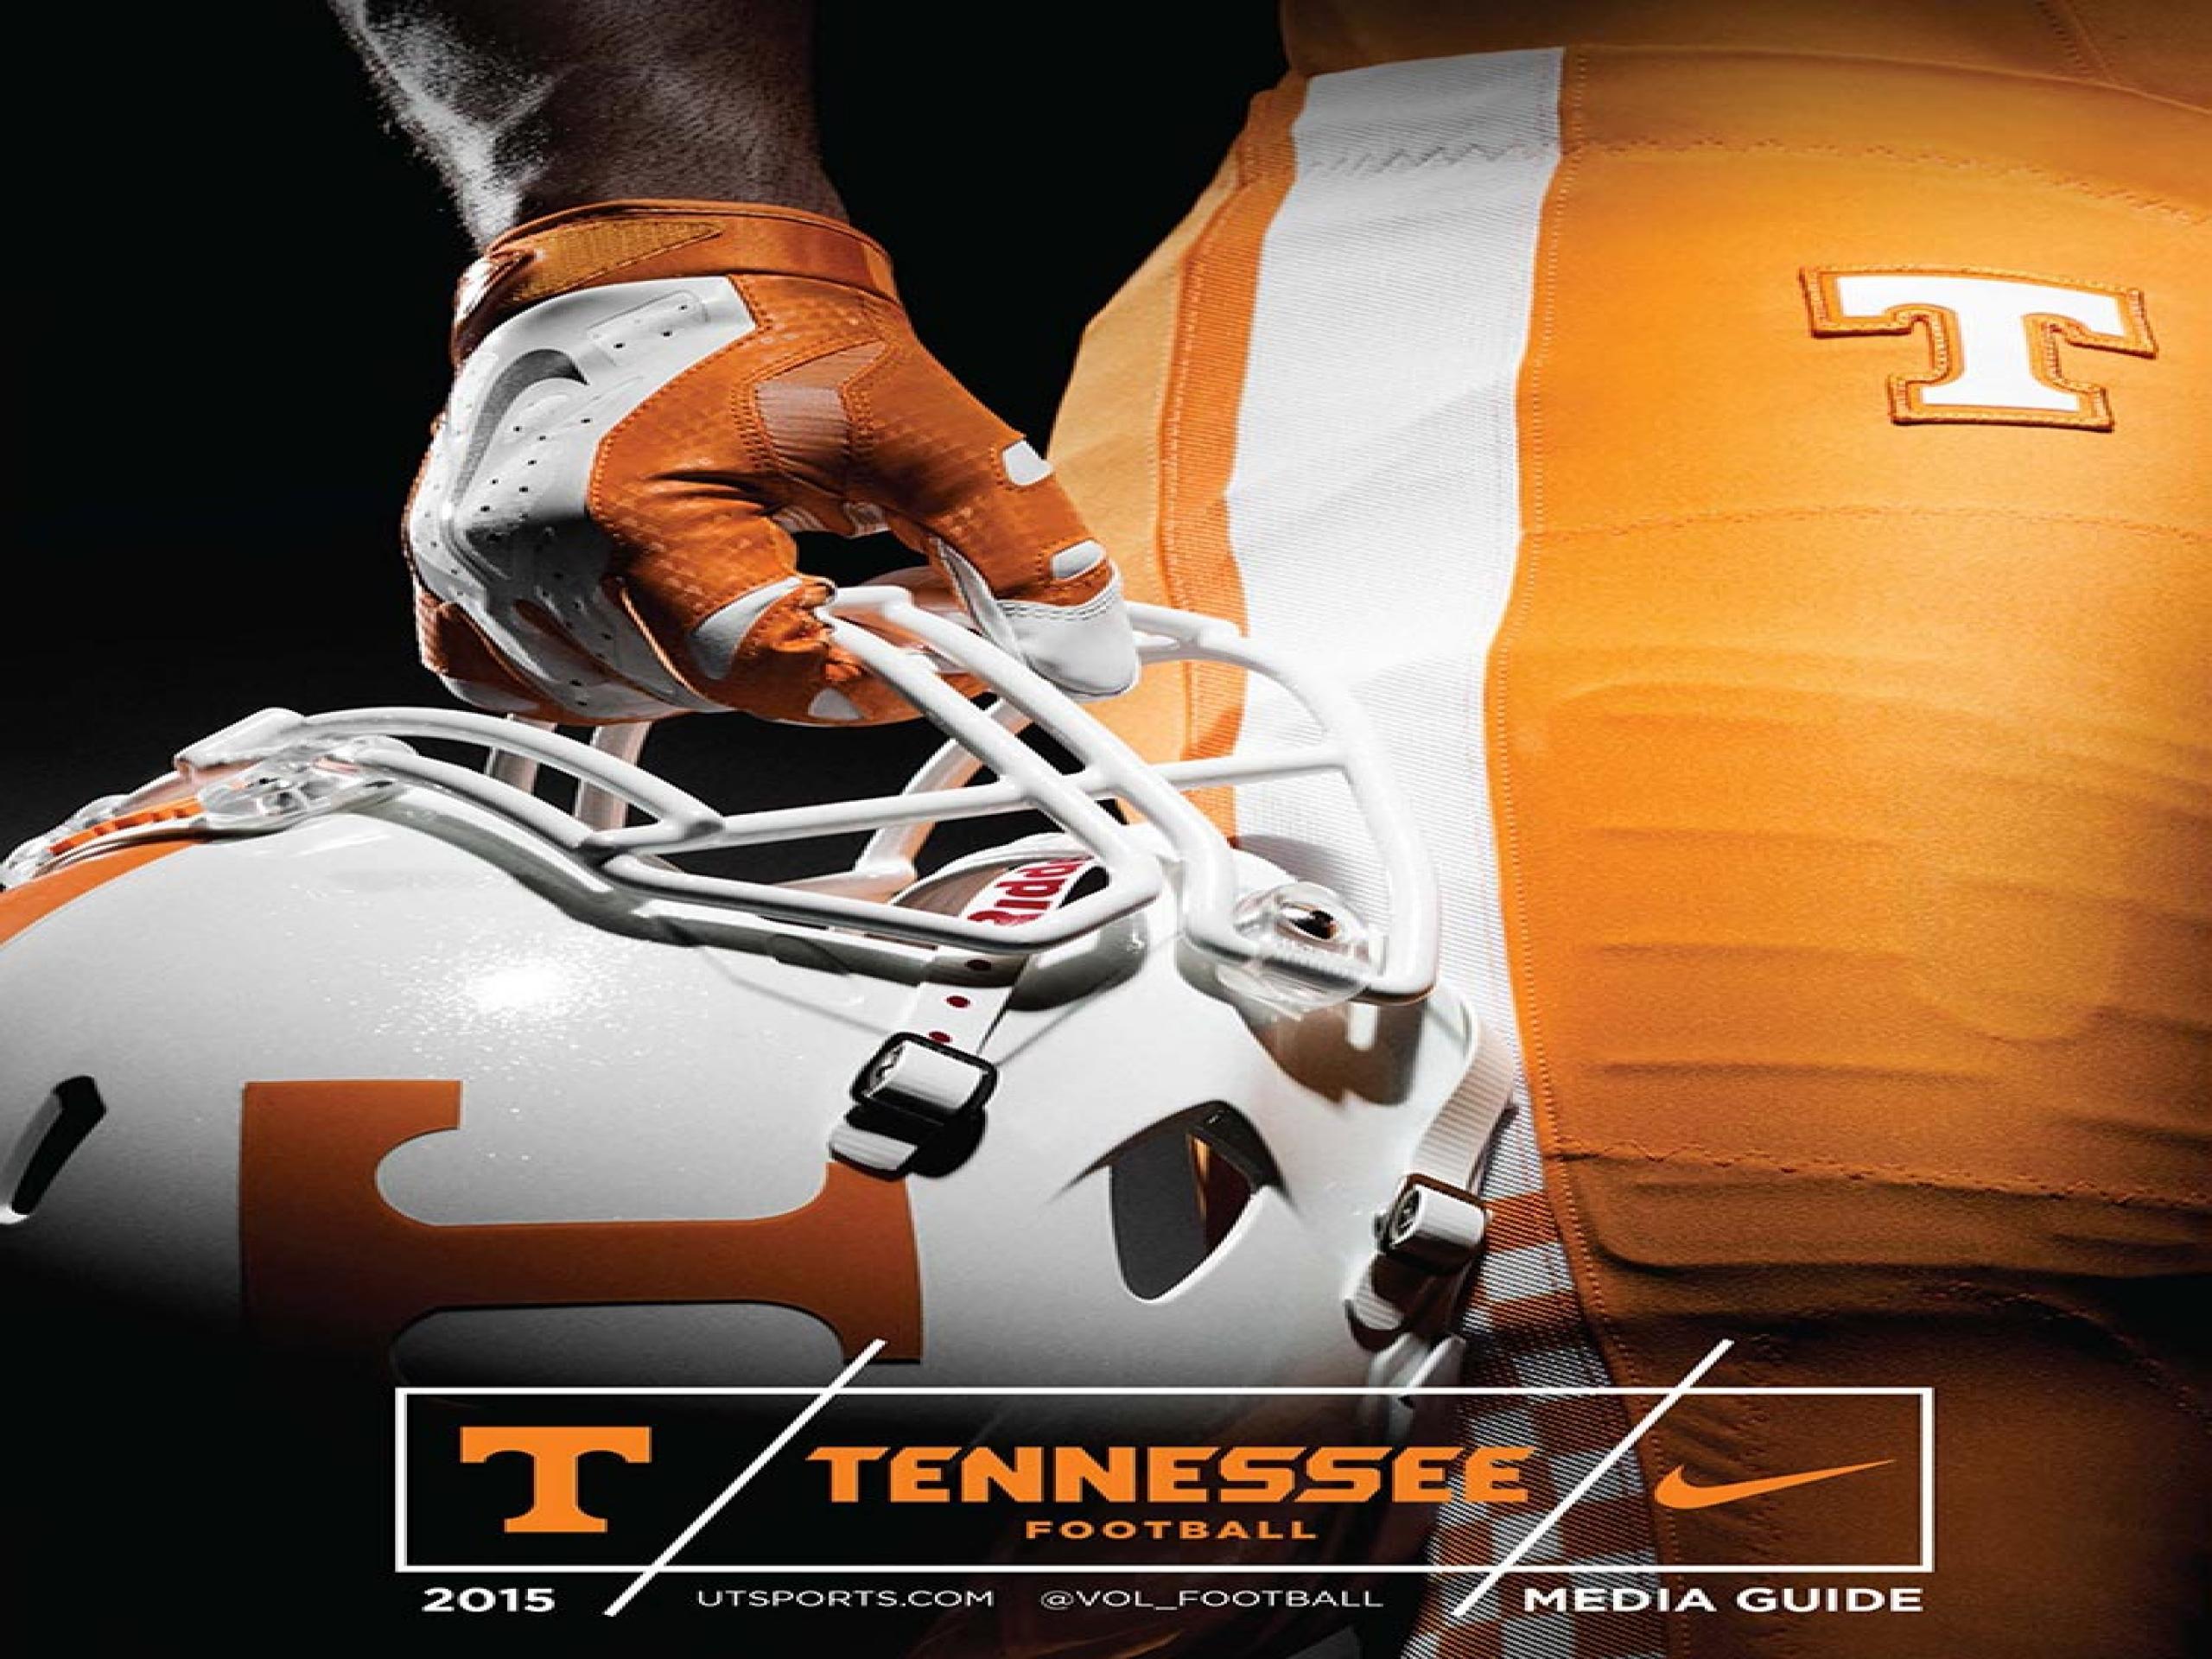 Tennessee Vols Football Wallpaper 0.13 Mb